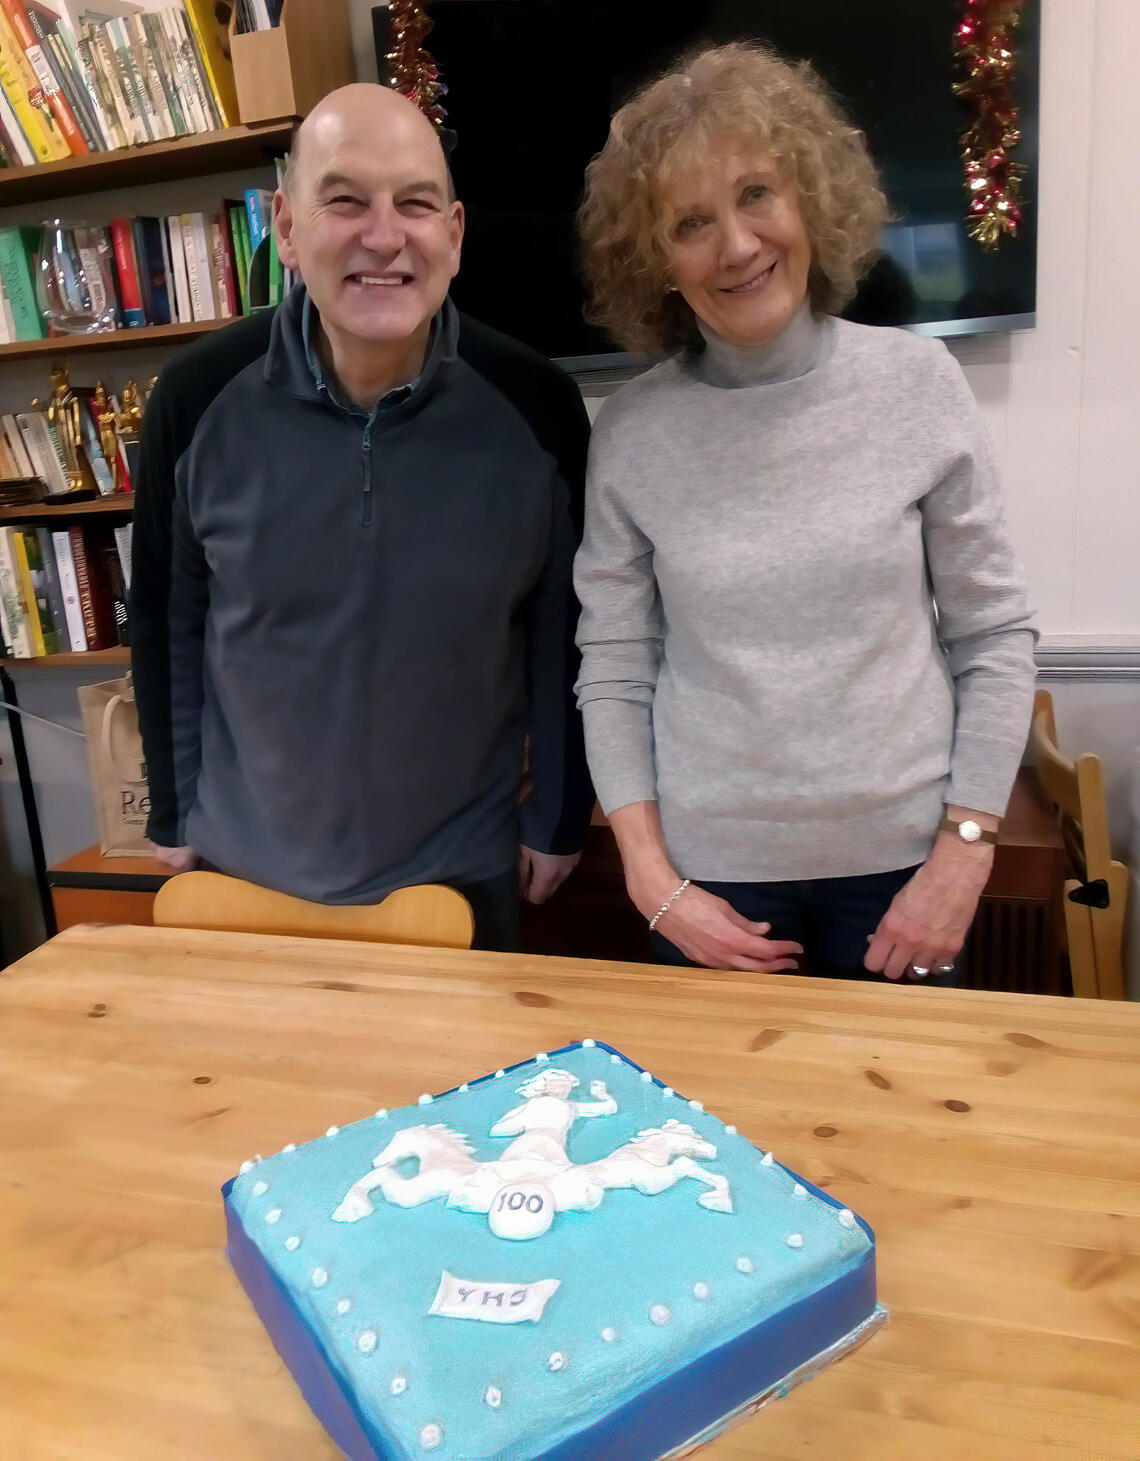 100 year York House cake celebration with Mark